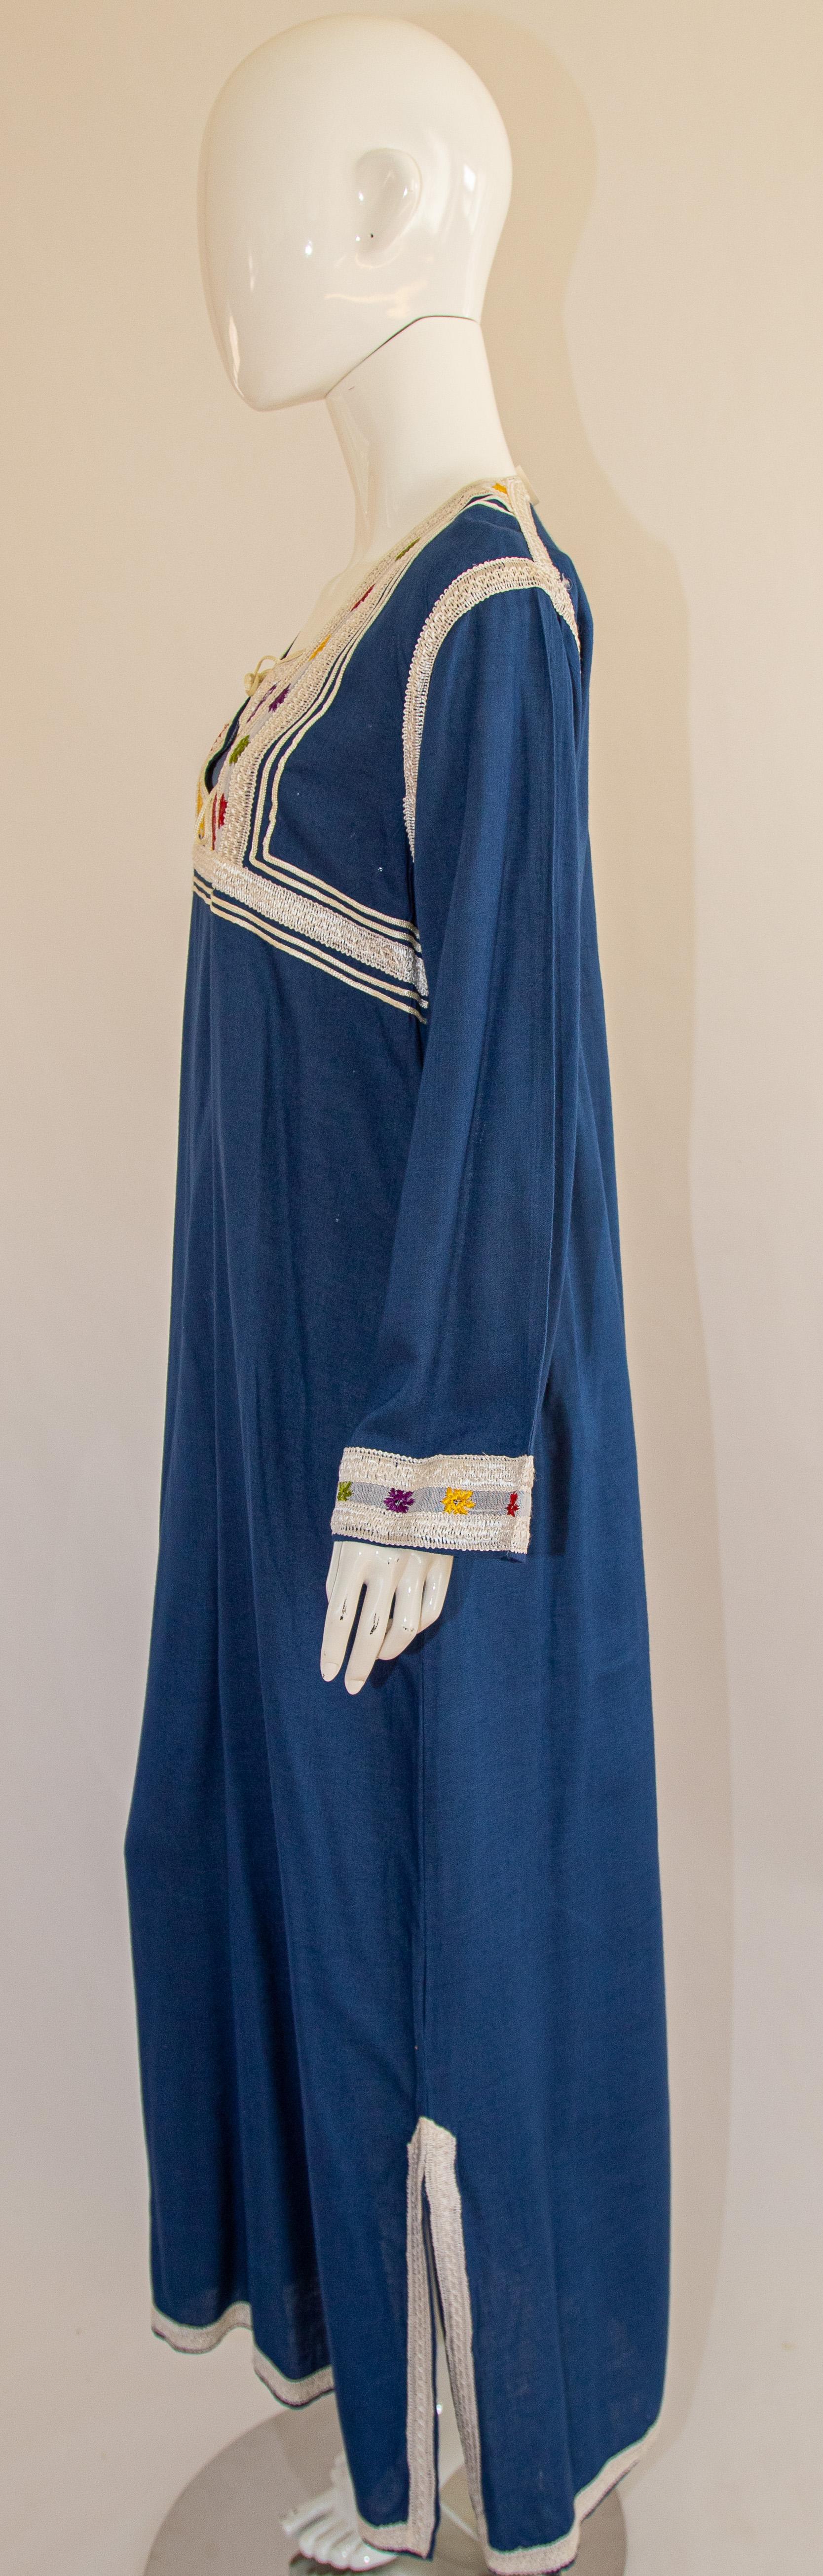 Moroccan Vintage Blue Caftan, 1970 Maxi Dress Kaftan by Glenn Boston Size M For Sale 2